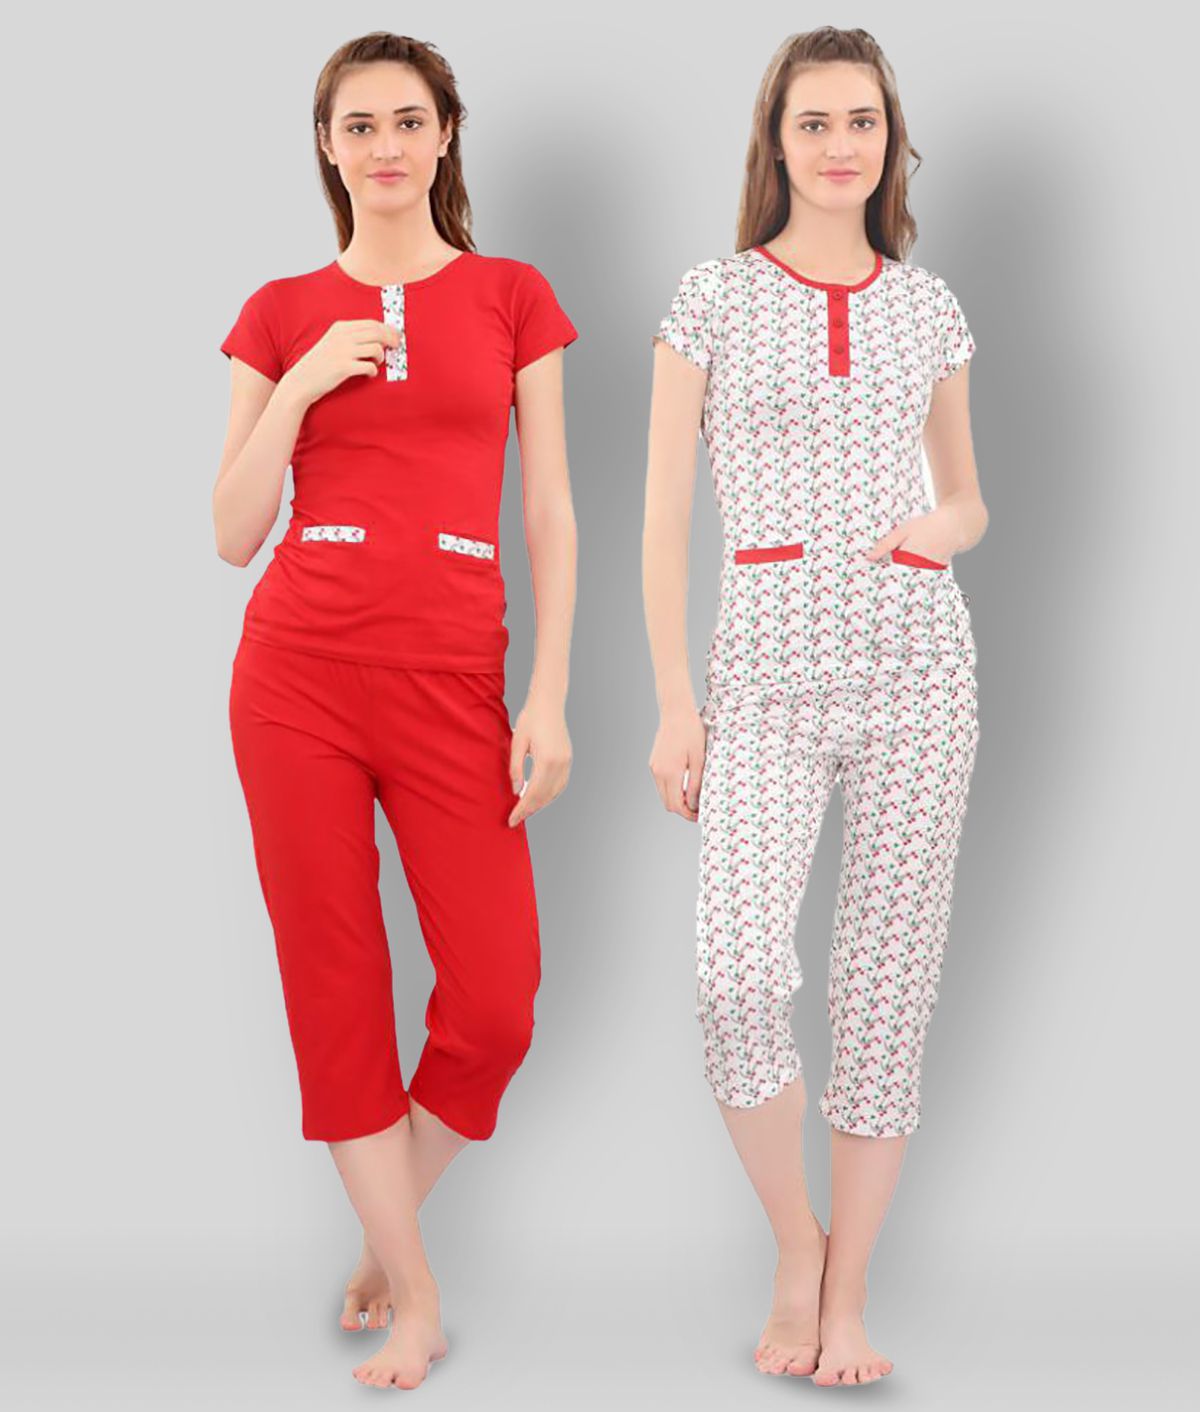     			Zebu - Multicolor Cotton Women's Nightwear Nightsuit Sets